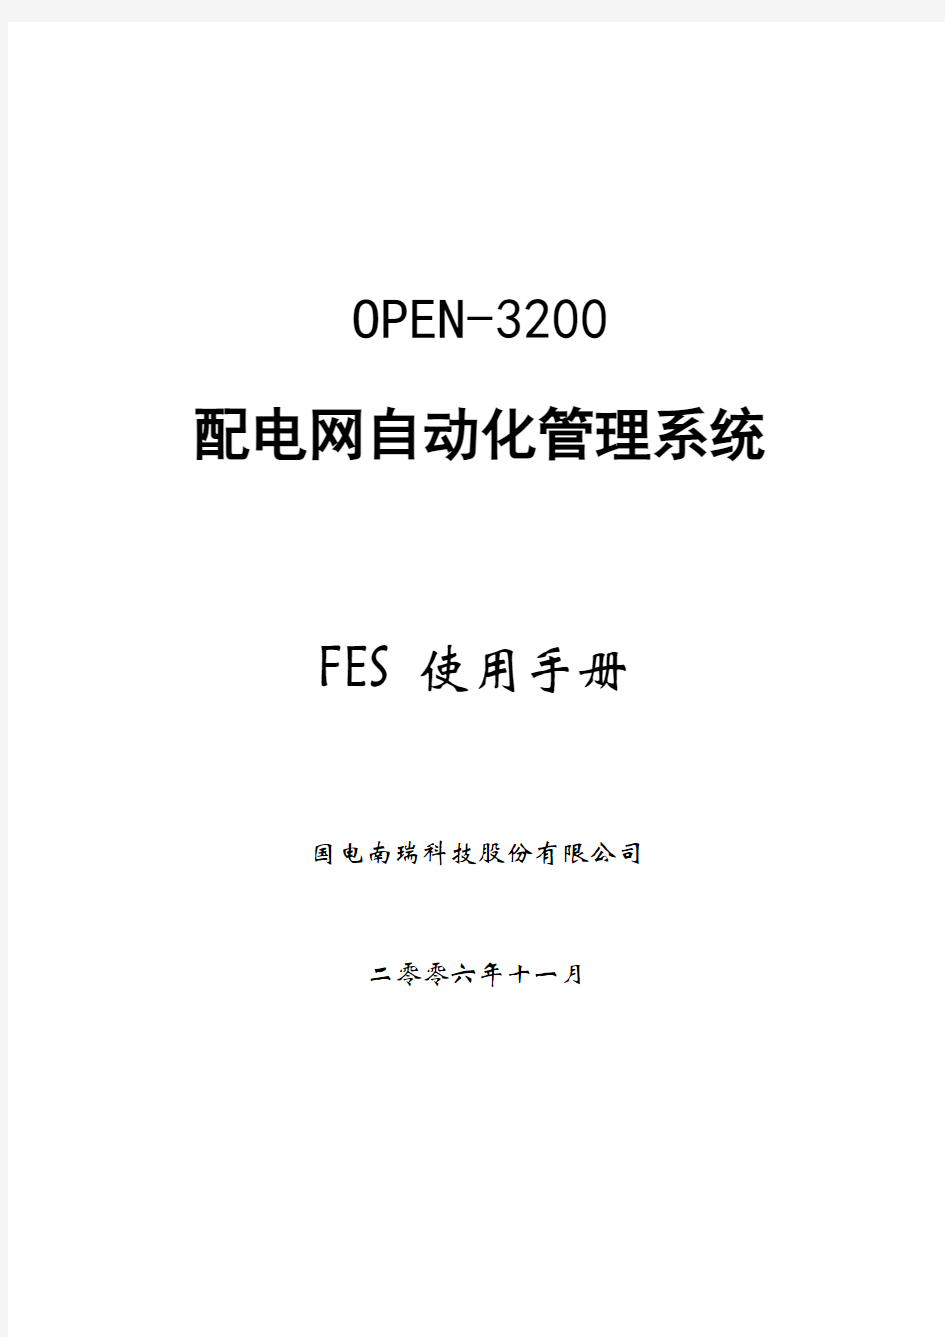 OPEN-3200___FES使用手册